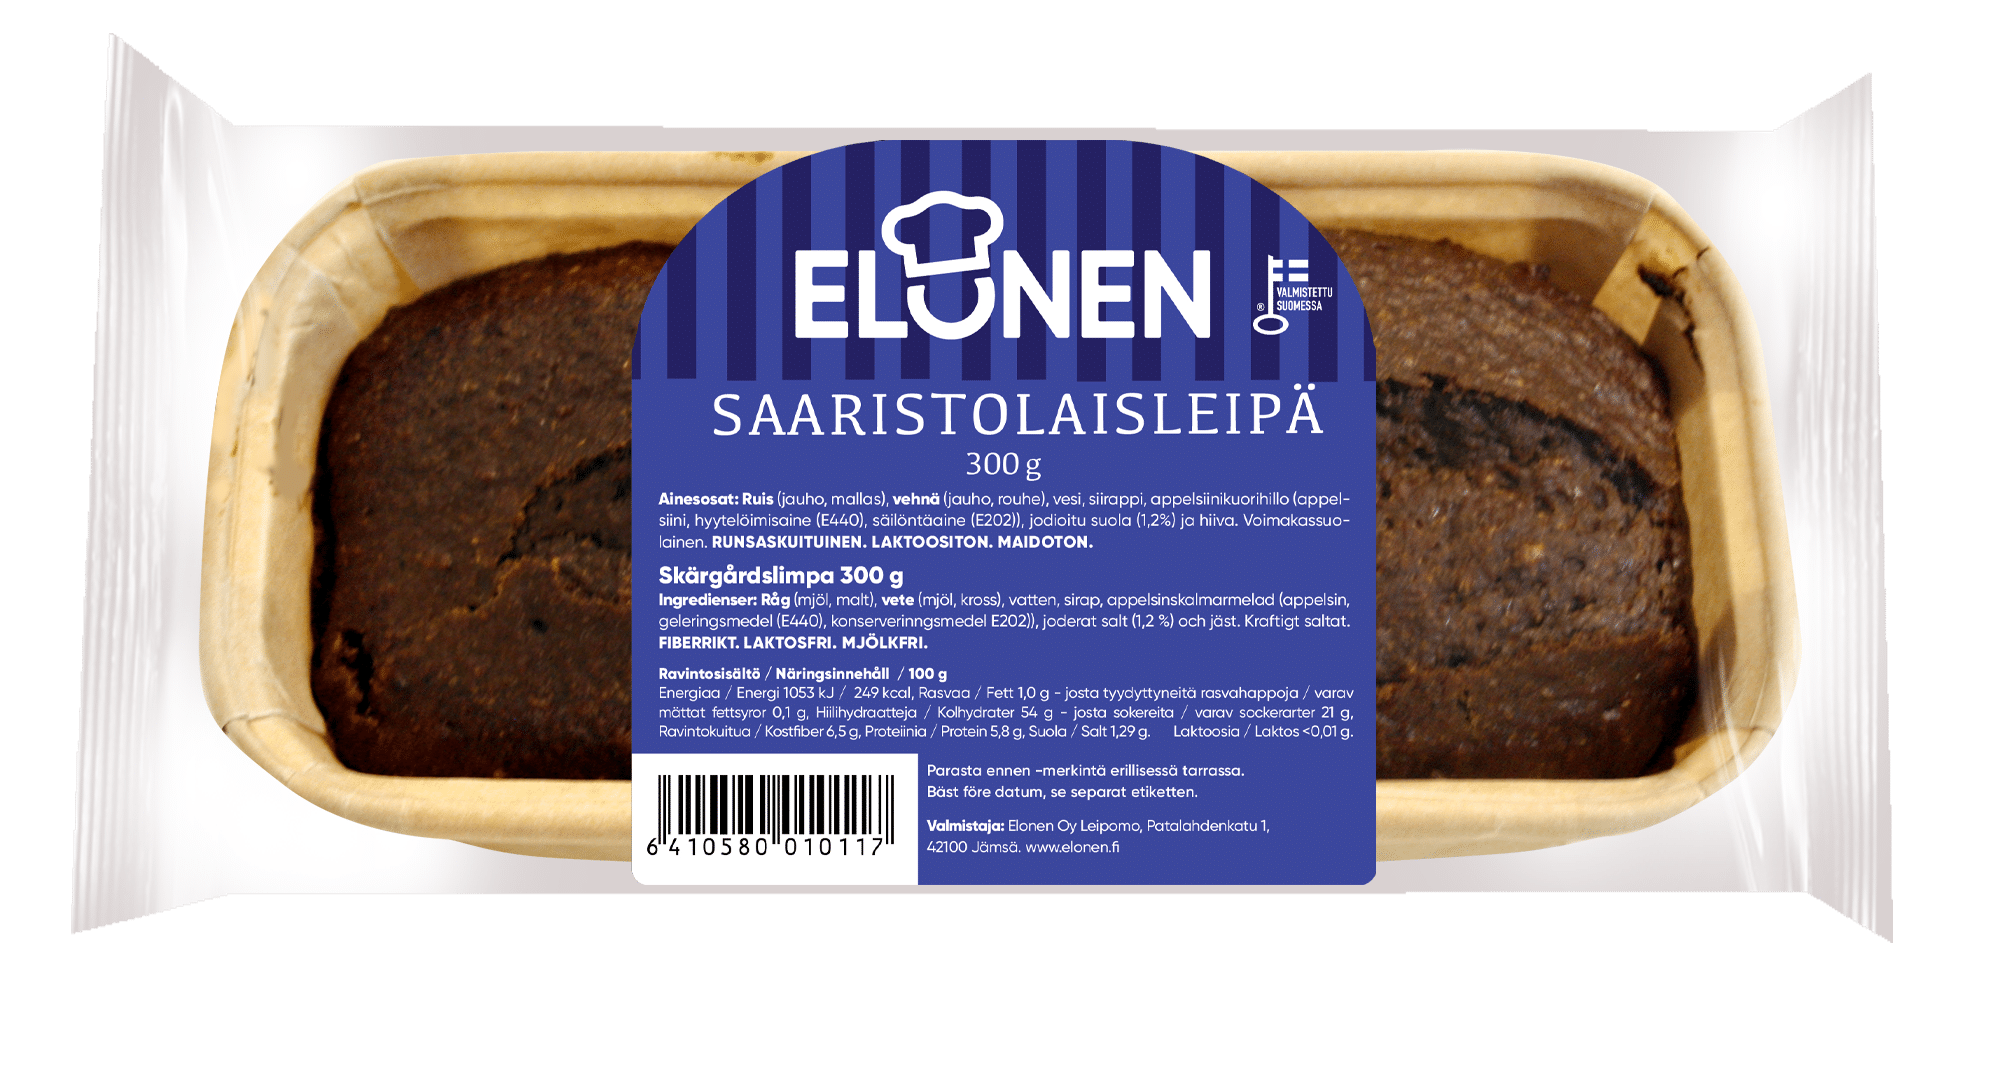 Saaristolaisleipä - Elonen Oy Leipomo